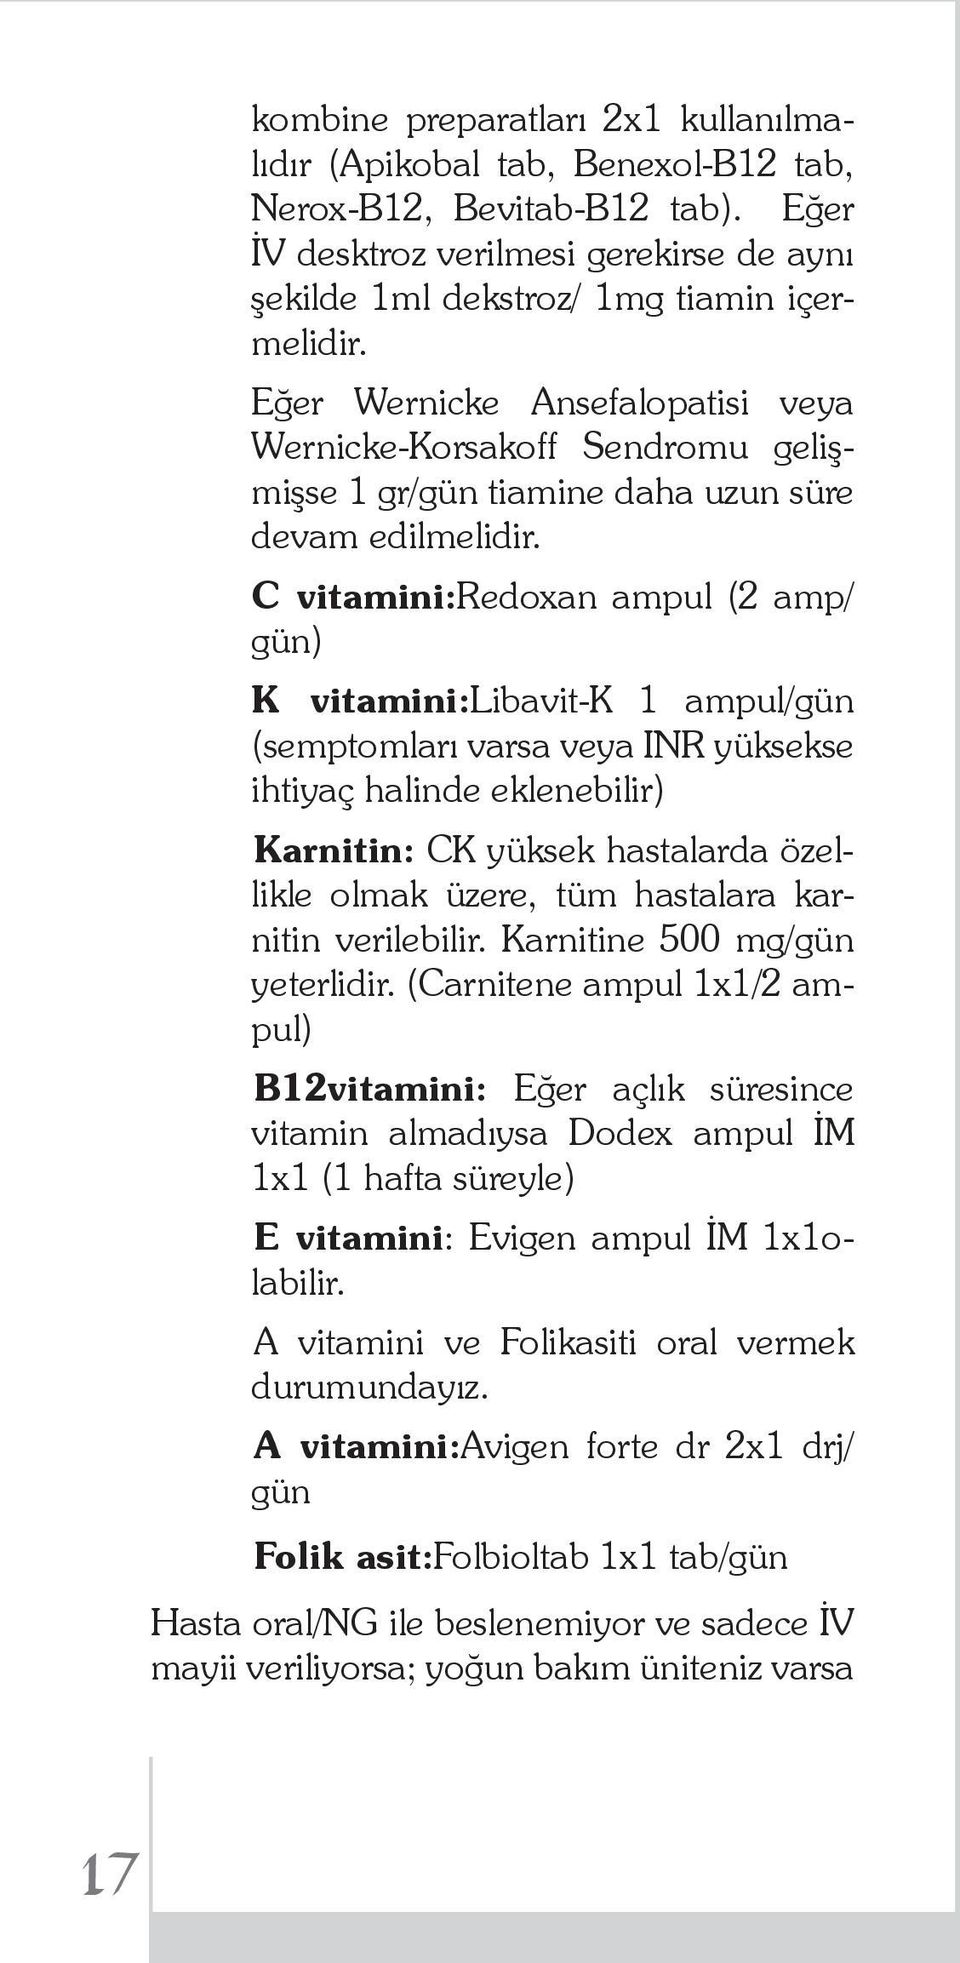 C vitamini:redoxan ampul (2 amp/ gün) K vitamini:libavit-k 1 ampul/gün (semptomları varsa veya INR yüksekse ihtiyaç halinde eklenebilir) Karnitin: CK yüksek hastalarda özellikle olmak üzere, tüm